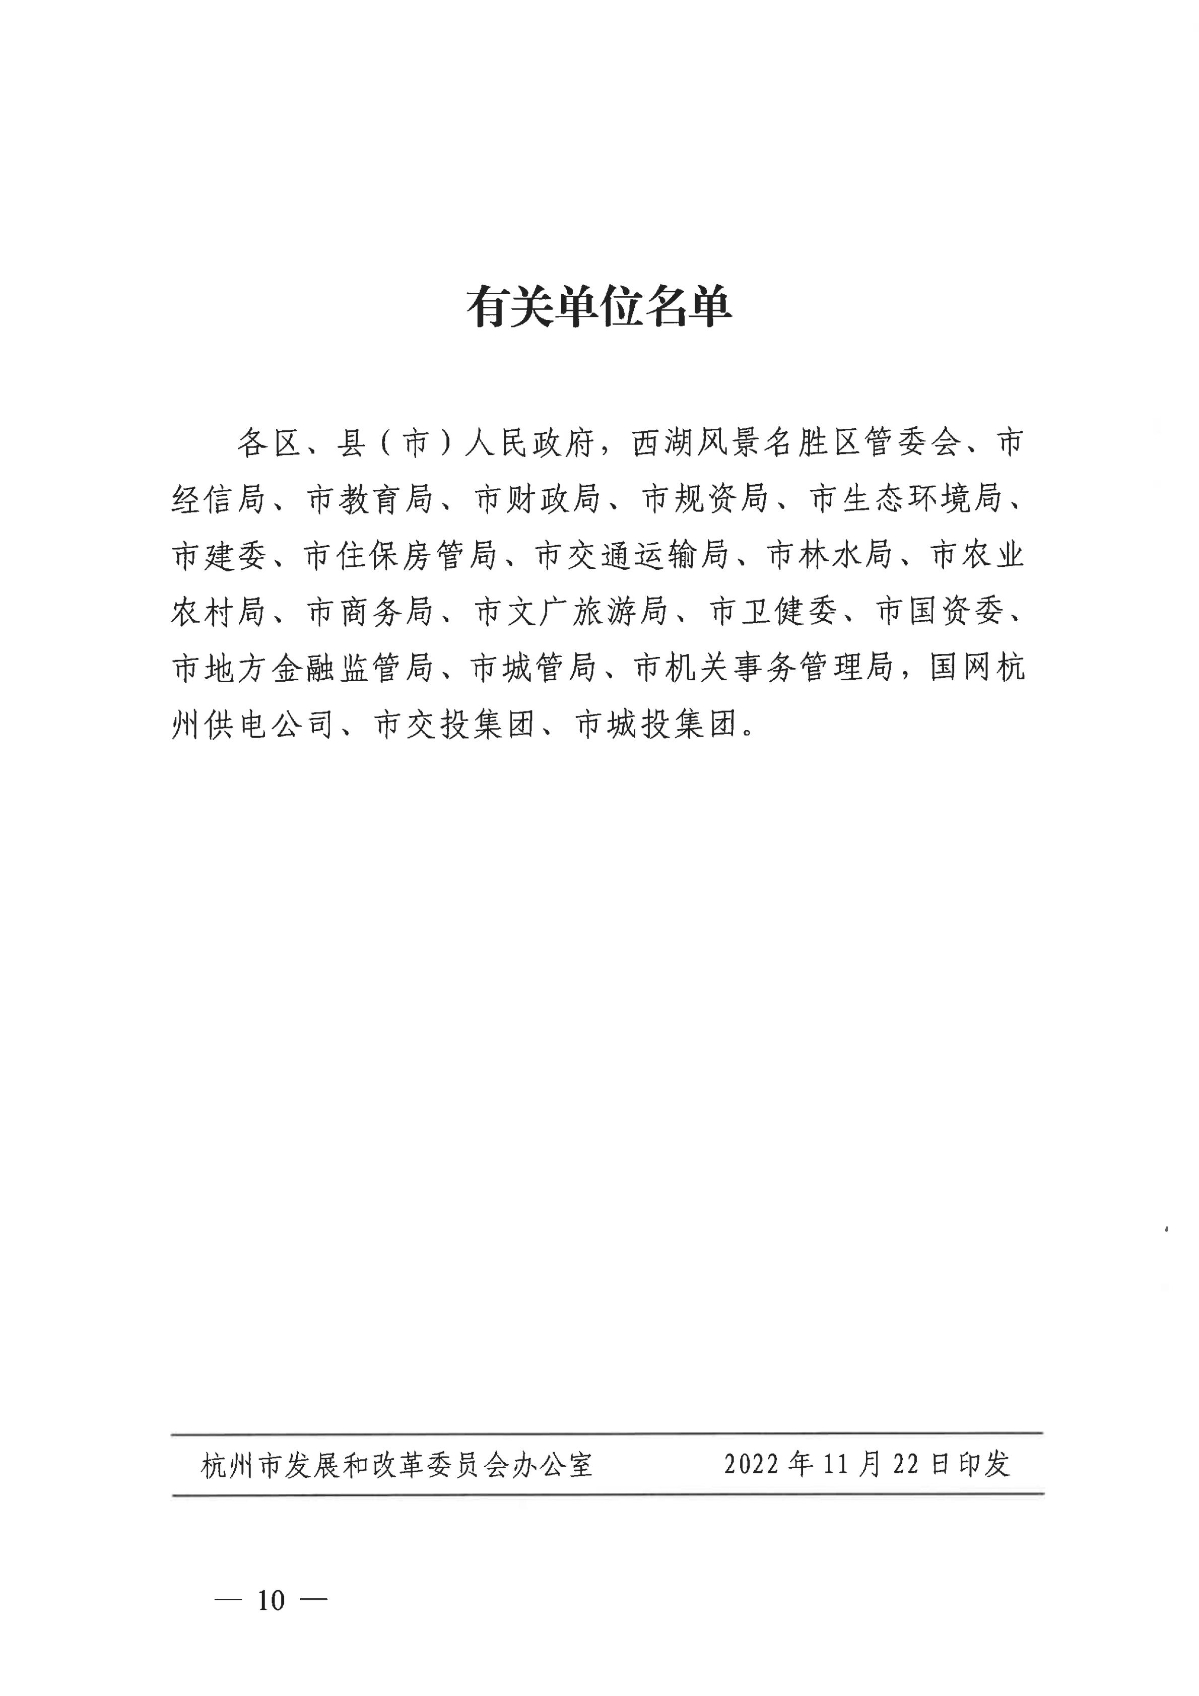 1128关于印发《关于进一步加快杭州市光伏发电项目建设的实施意见》的通知_09.jpg